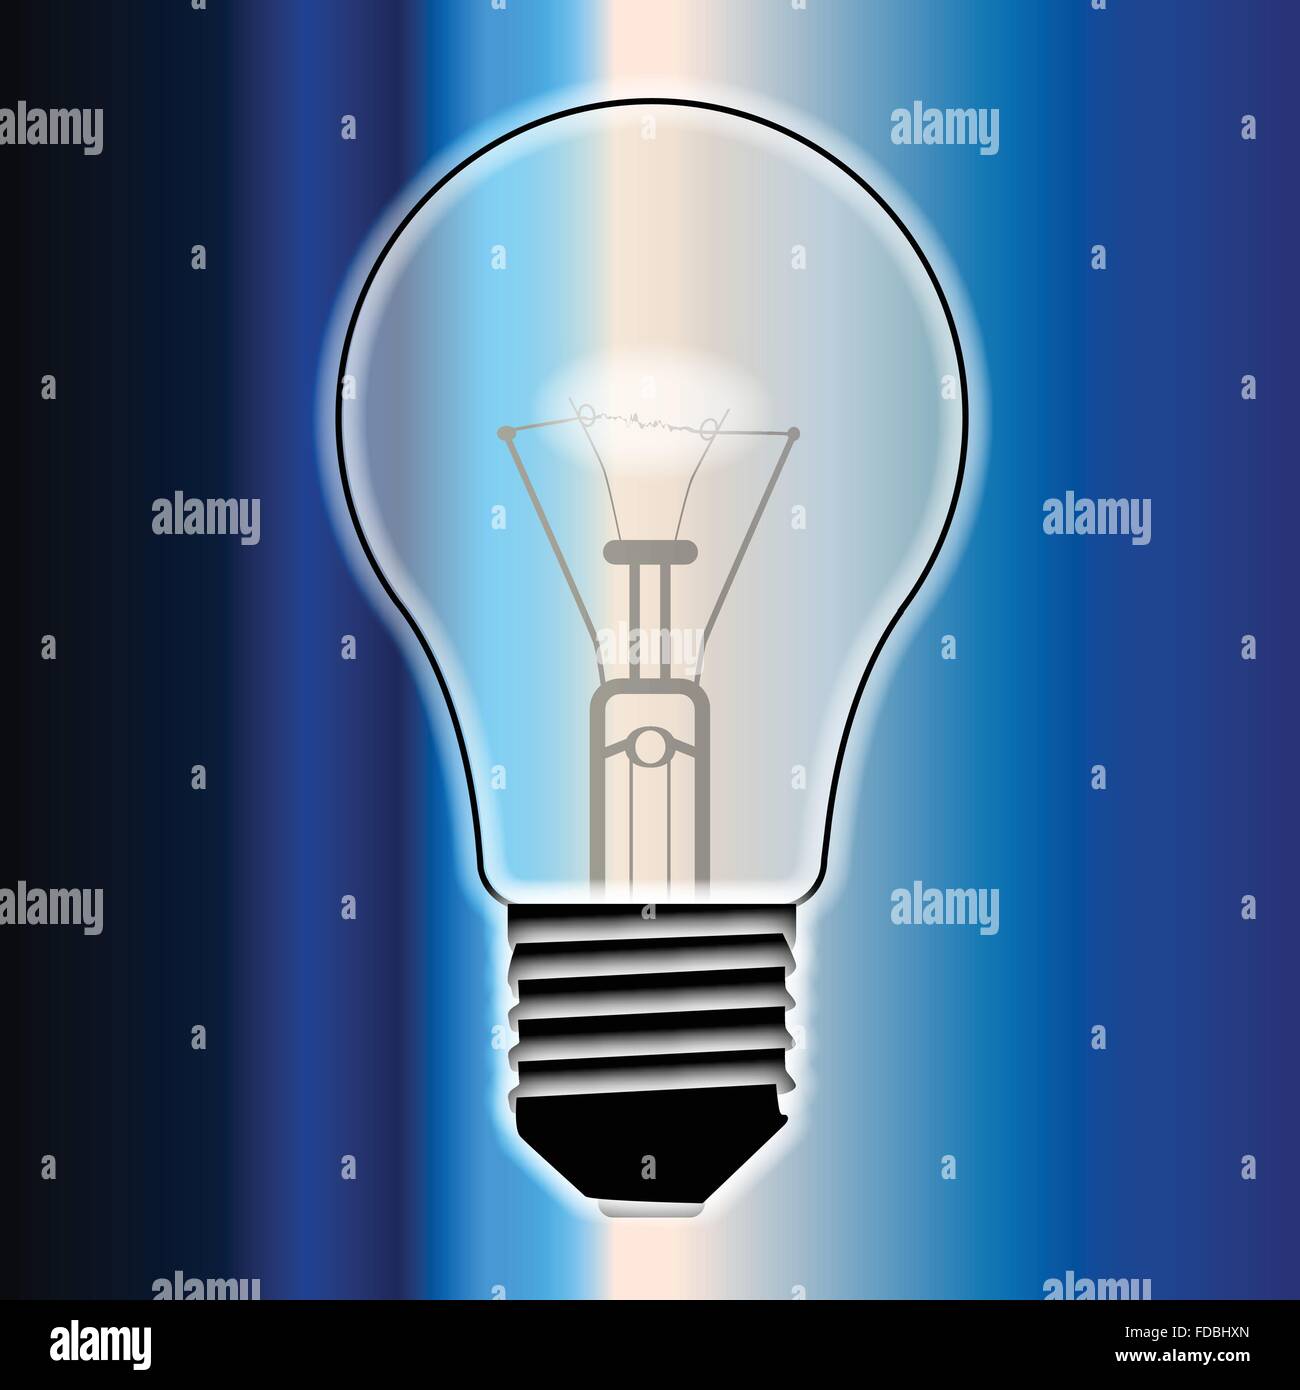 Une ampoule standard typique de bougies sur une base flash bleu Illustration de Vecteur